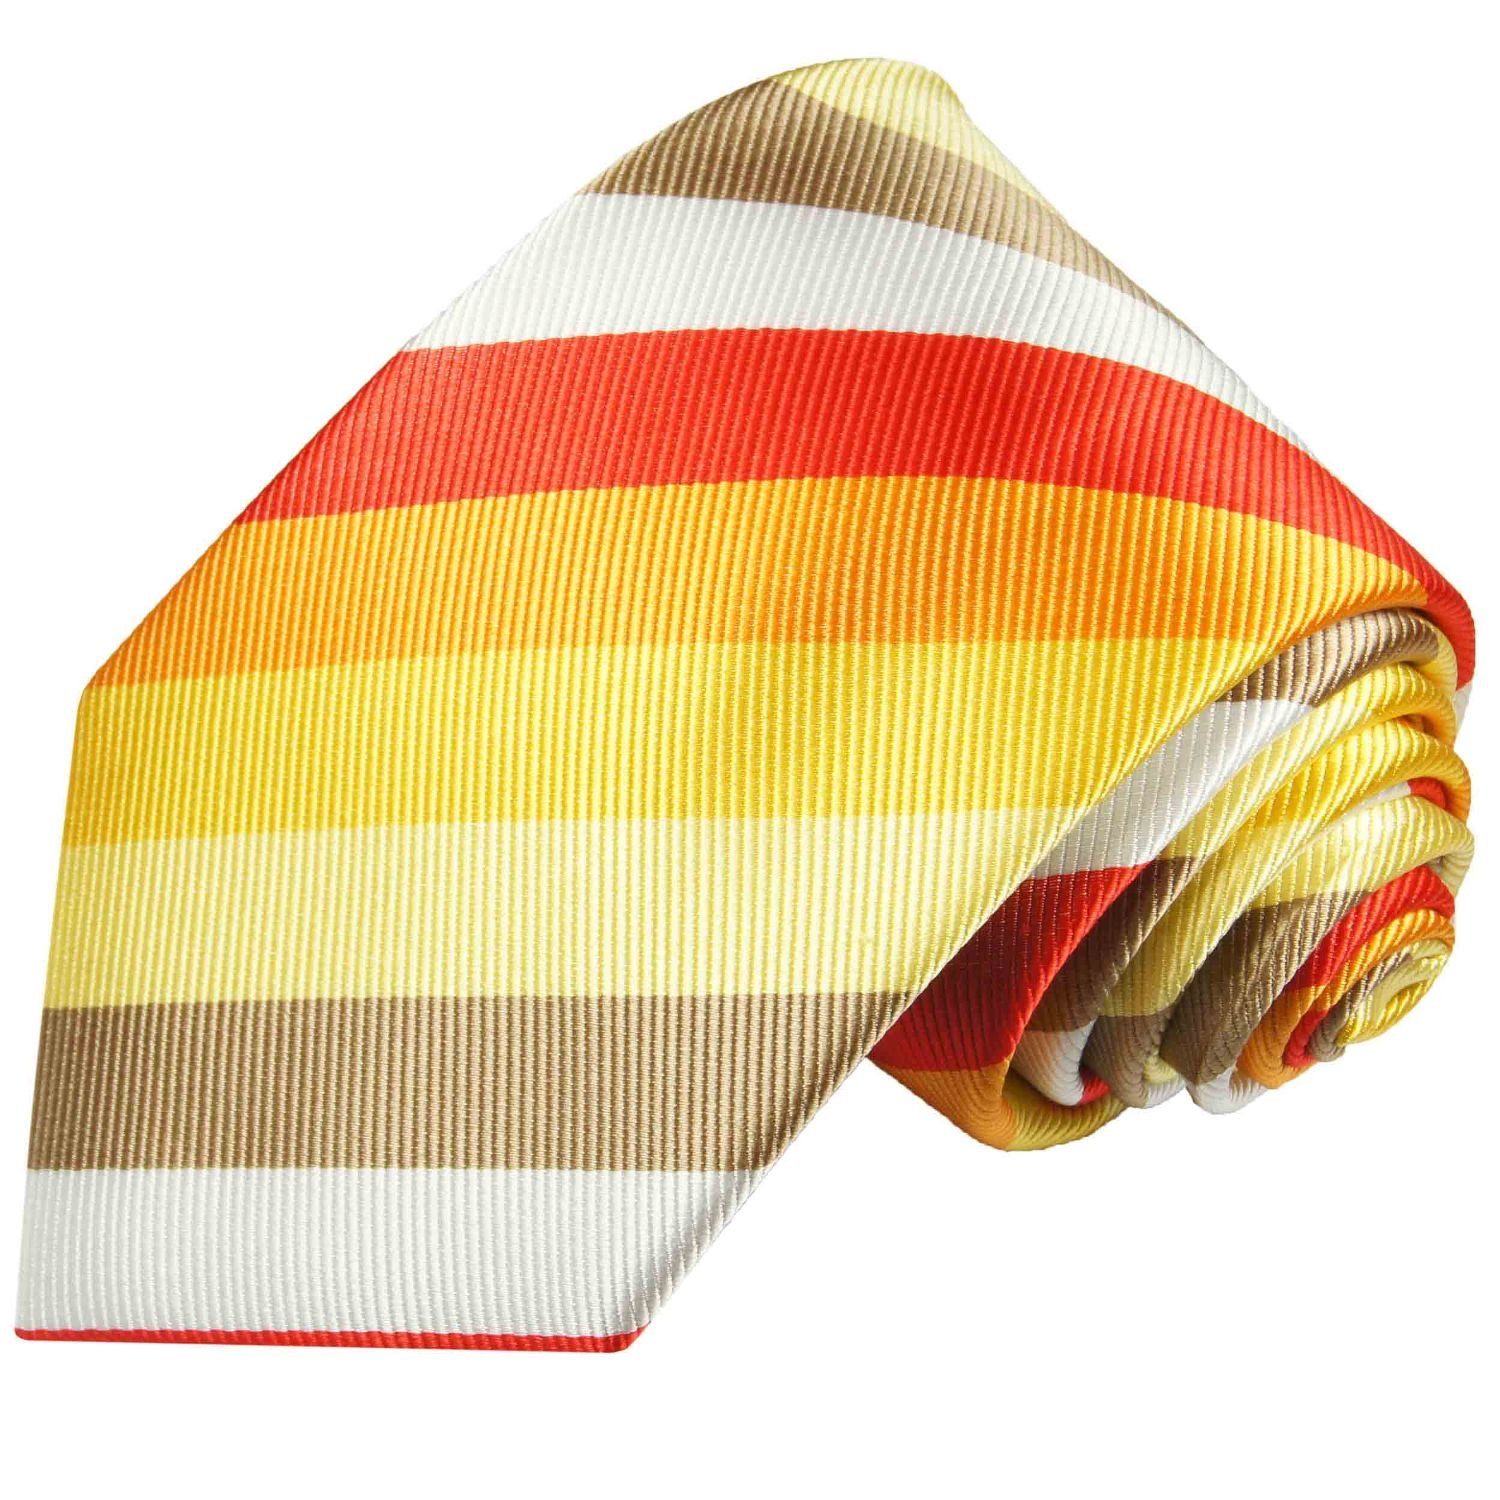 Paul Malone Krawatte Designer Seidenkrawatte Herren Schlips modern gestreift 100% Seide Breit (8cm), rot gold gelb 712